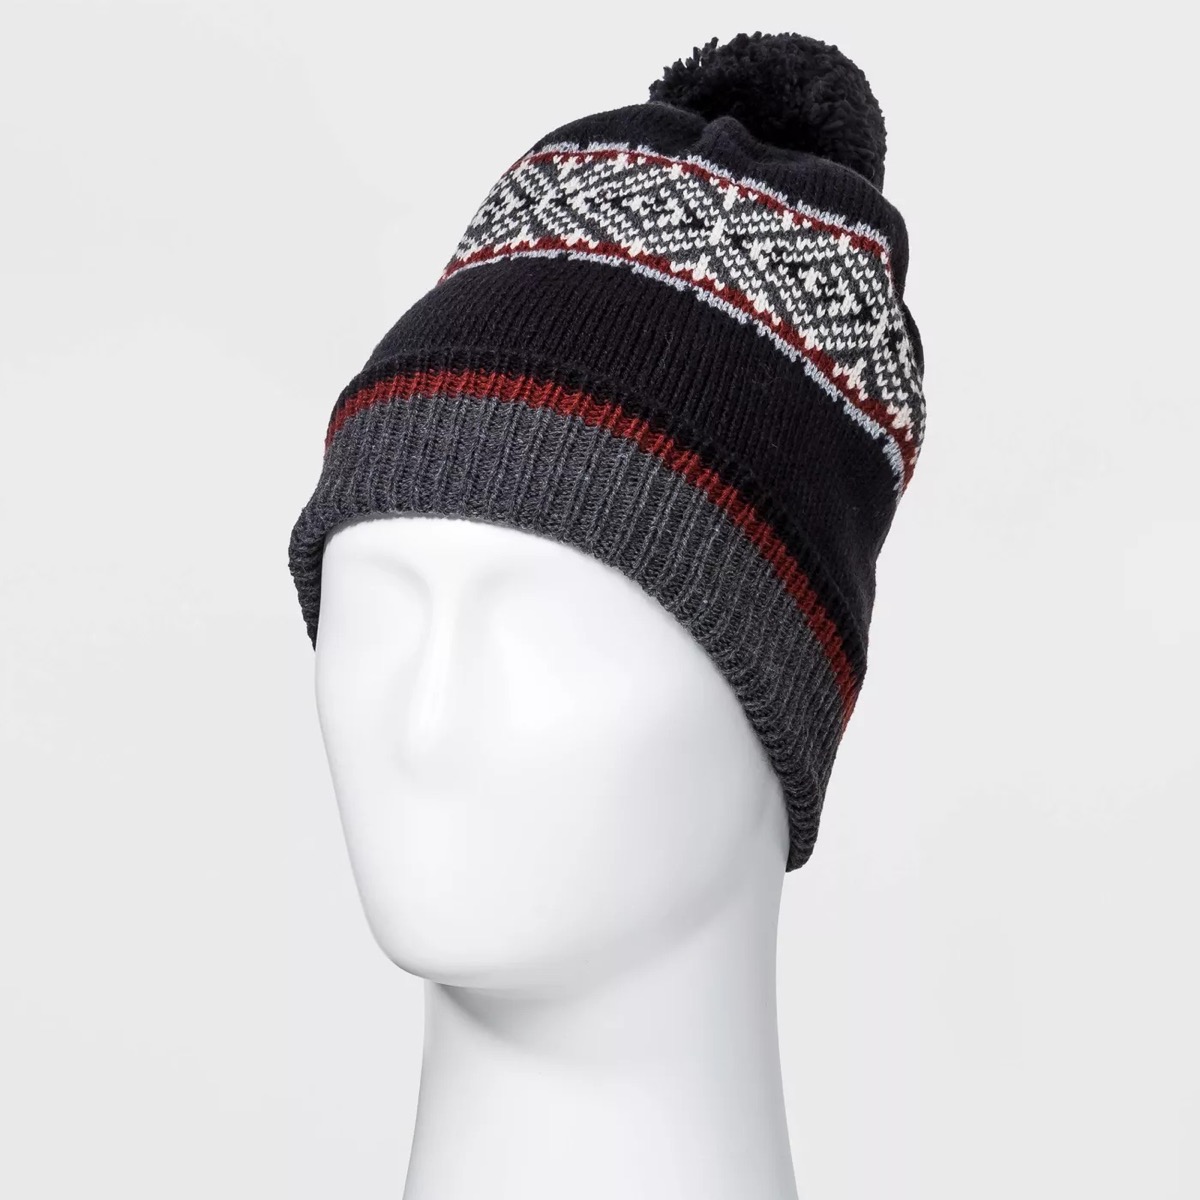 A knit beanie hat